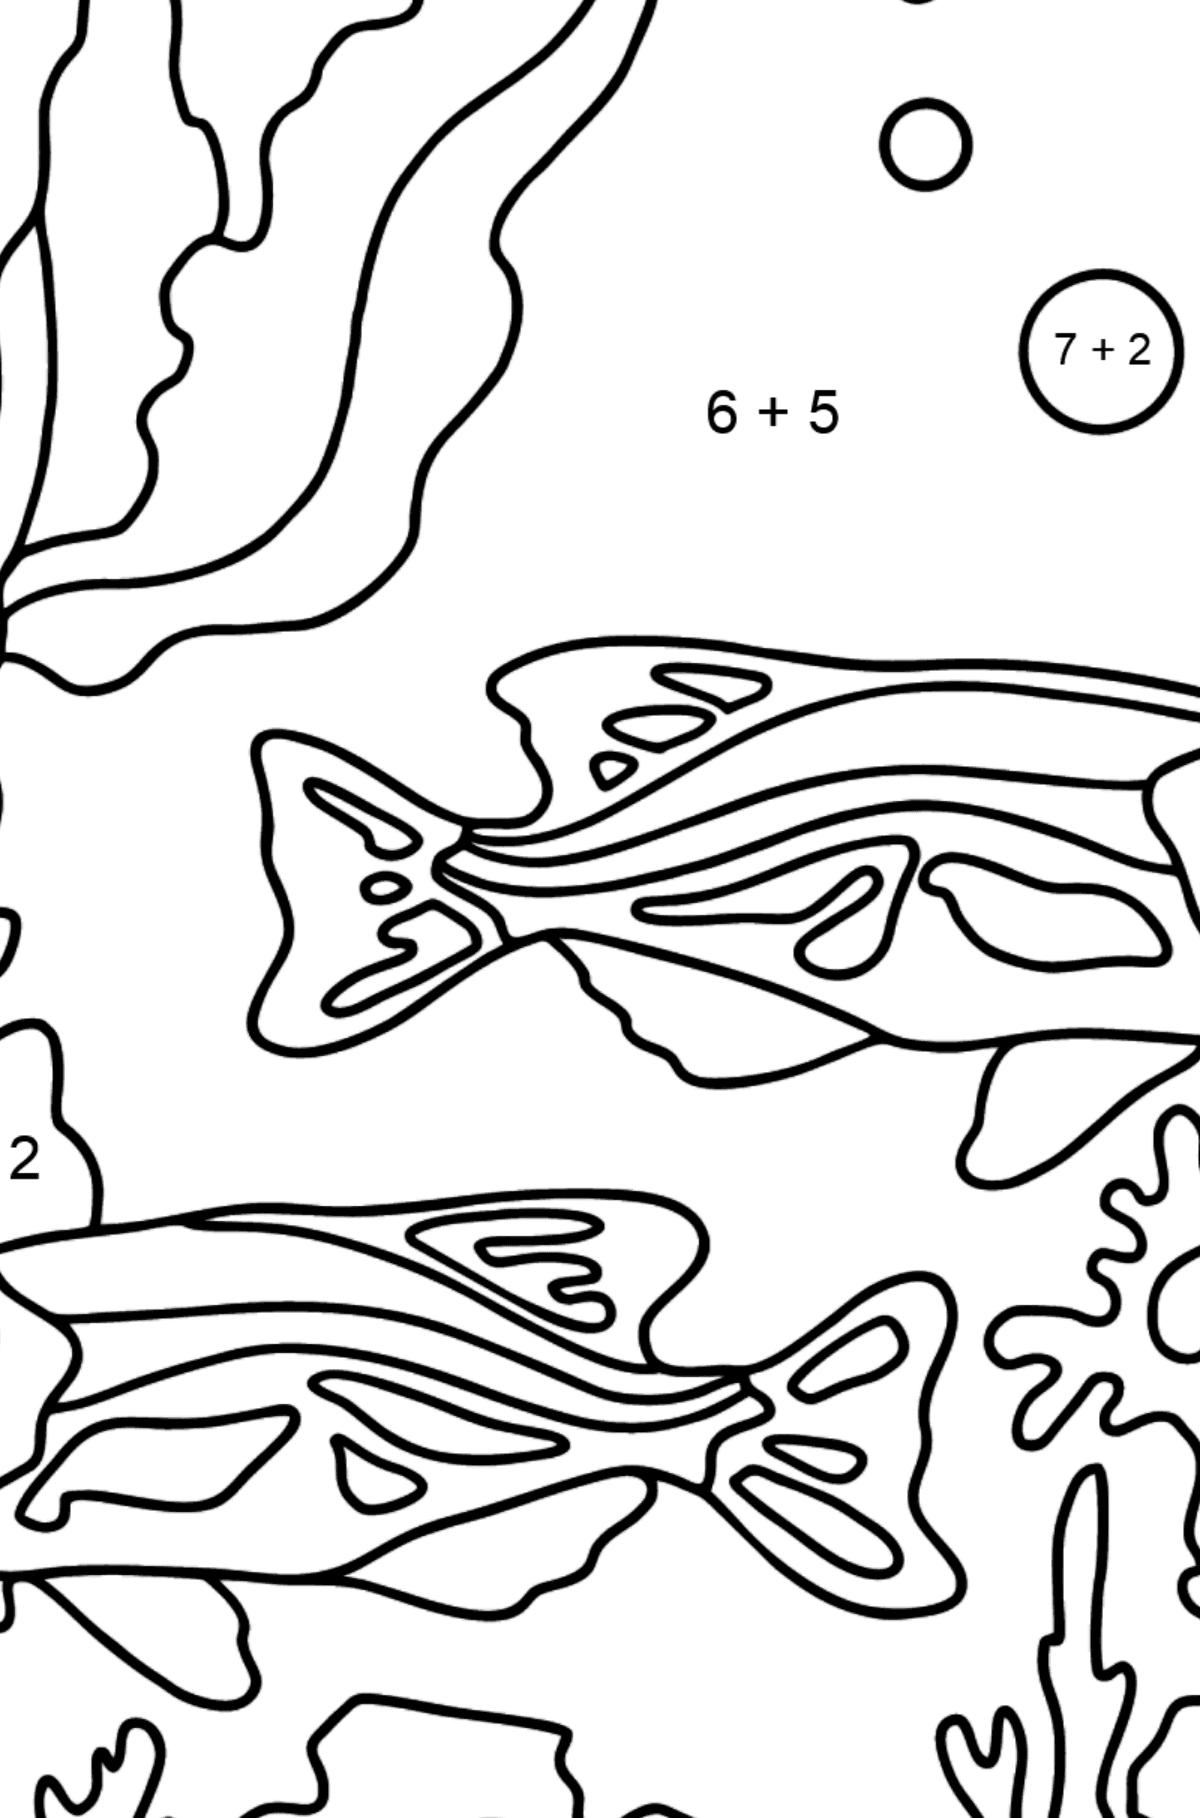 Tegning til fargelegging fisketank (enkelt) - Matematisk fargeleggingsside - addisjon for barn